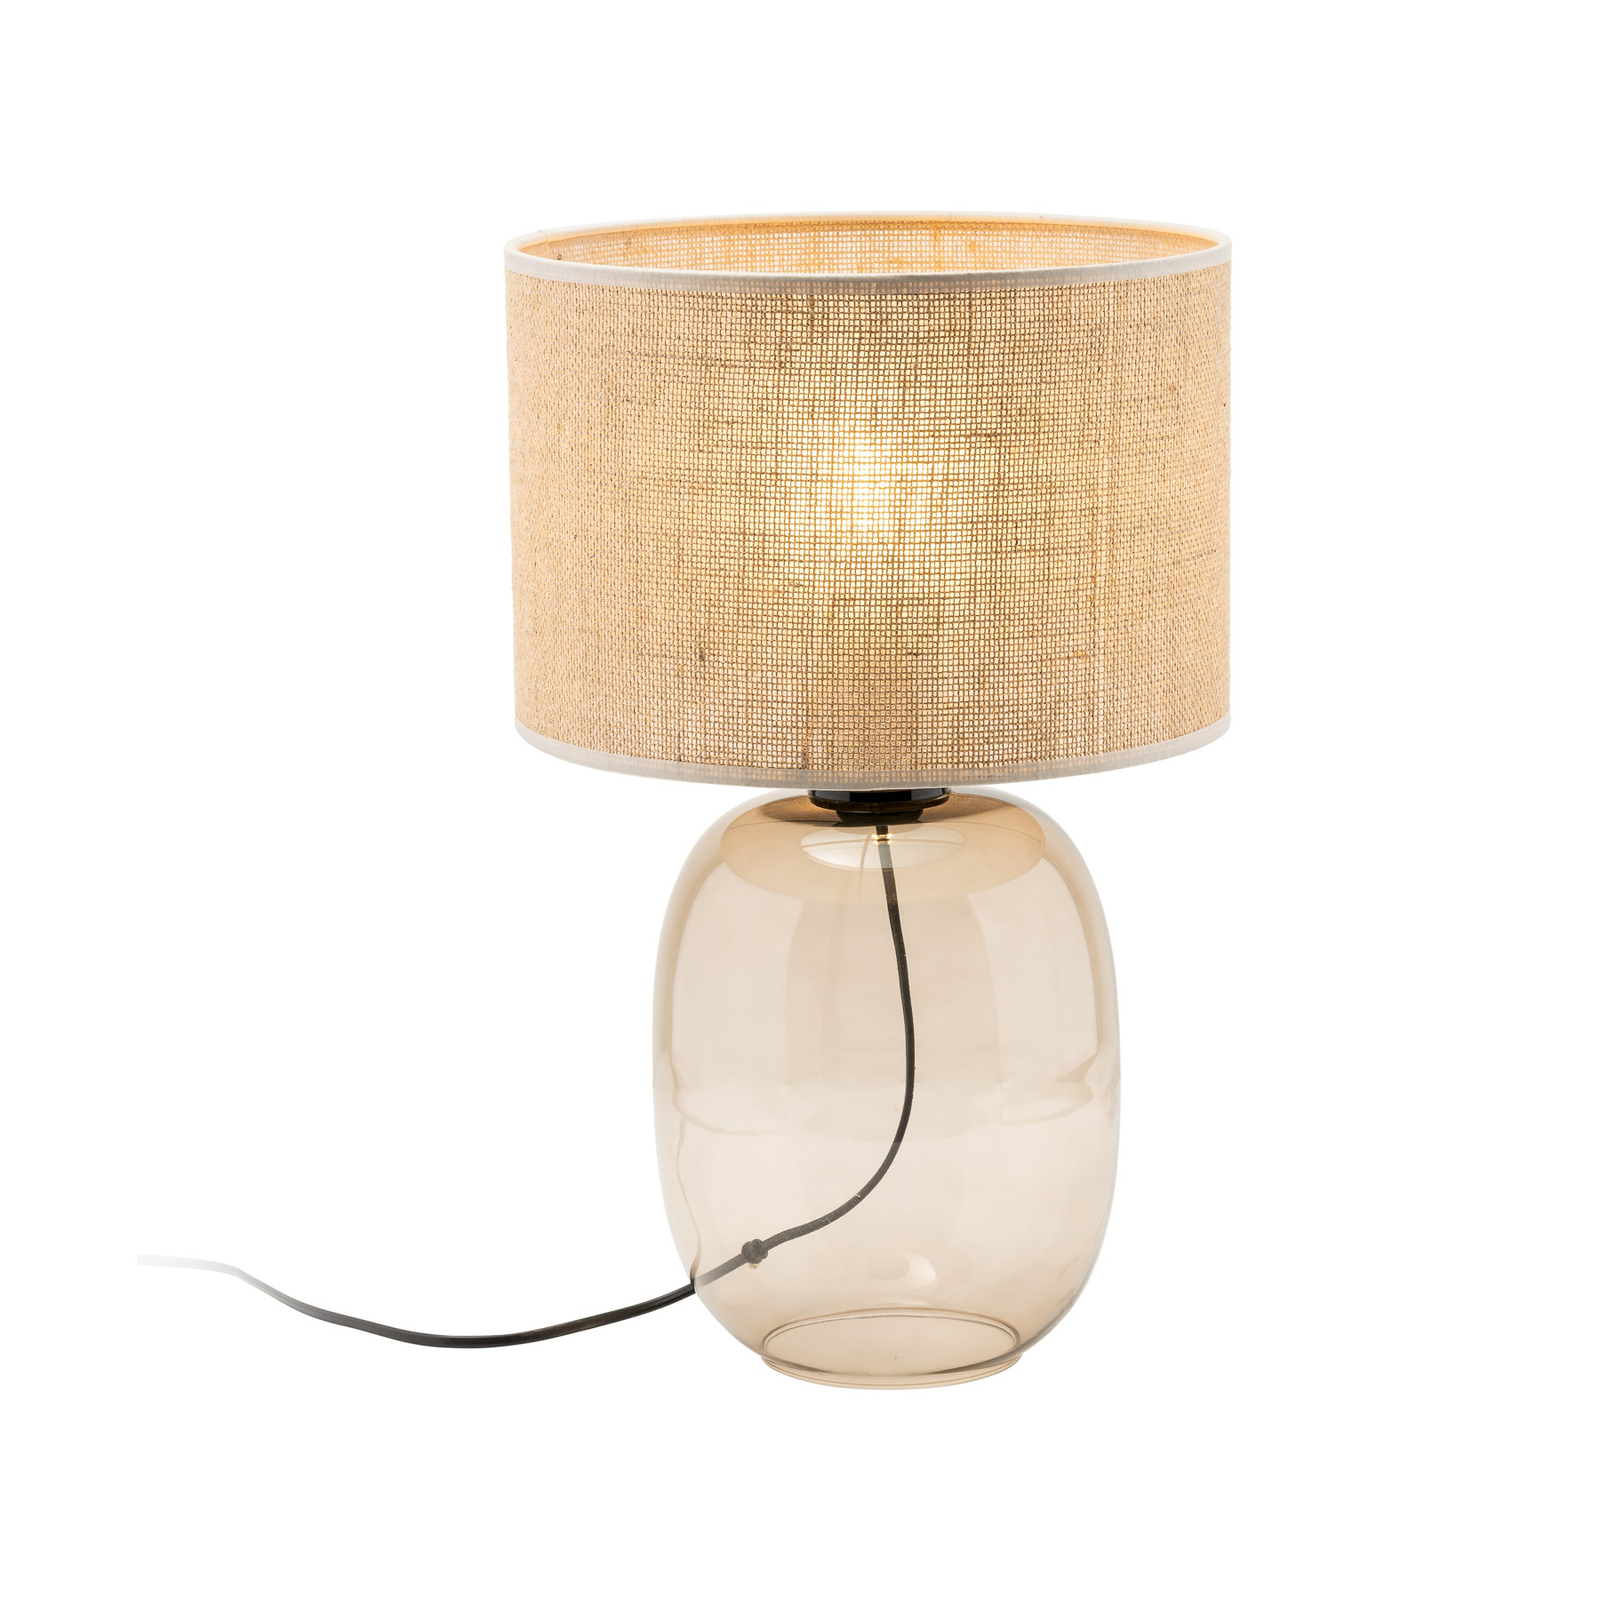 Melody bordlampe, høyde 48 cm, brunt glass, naturlig jute